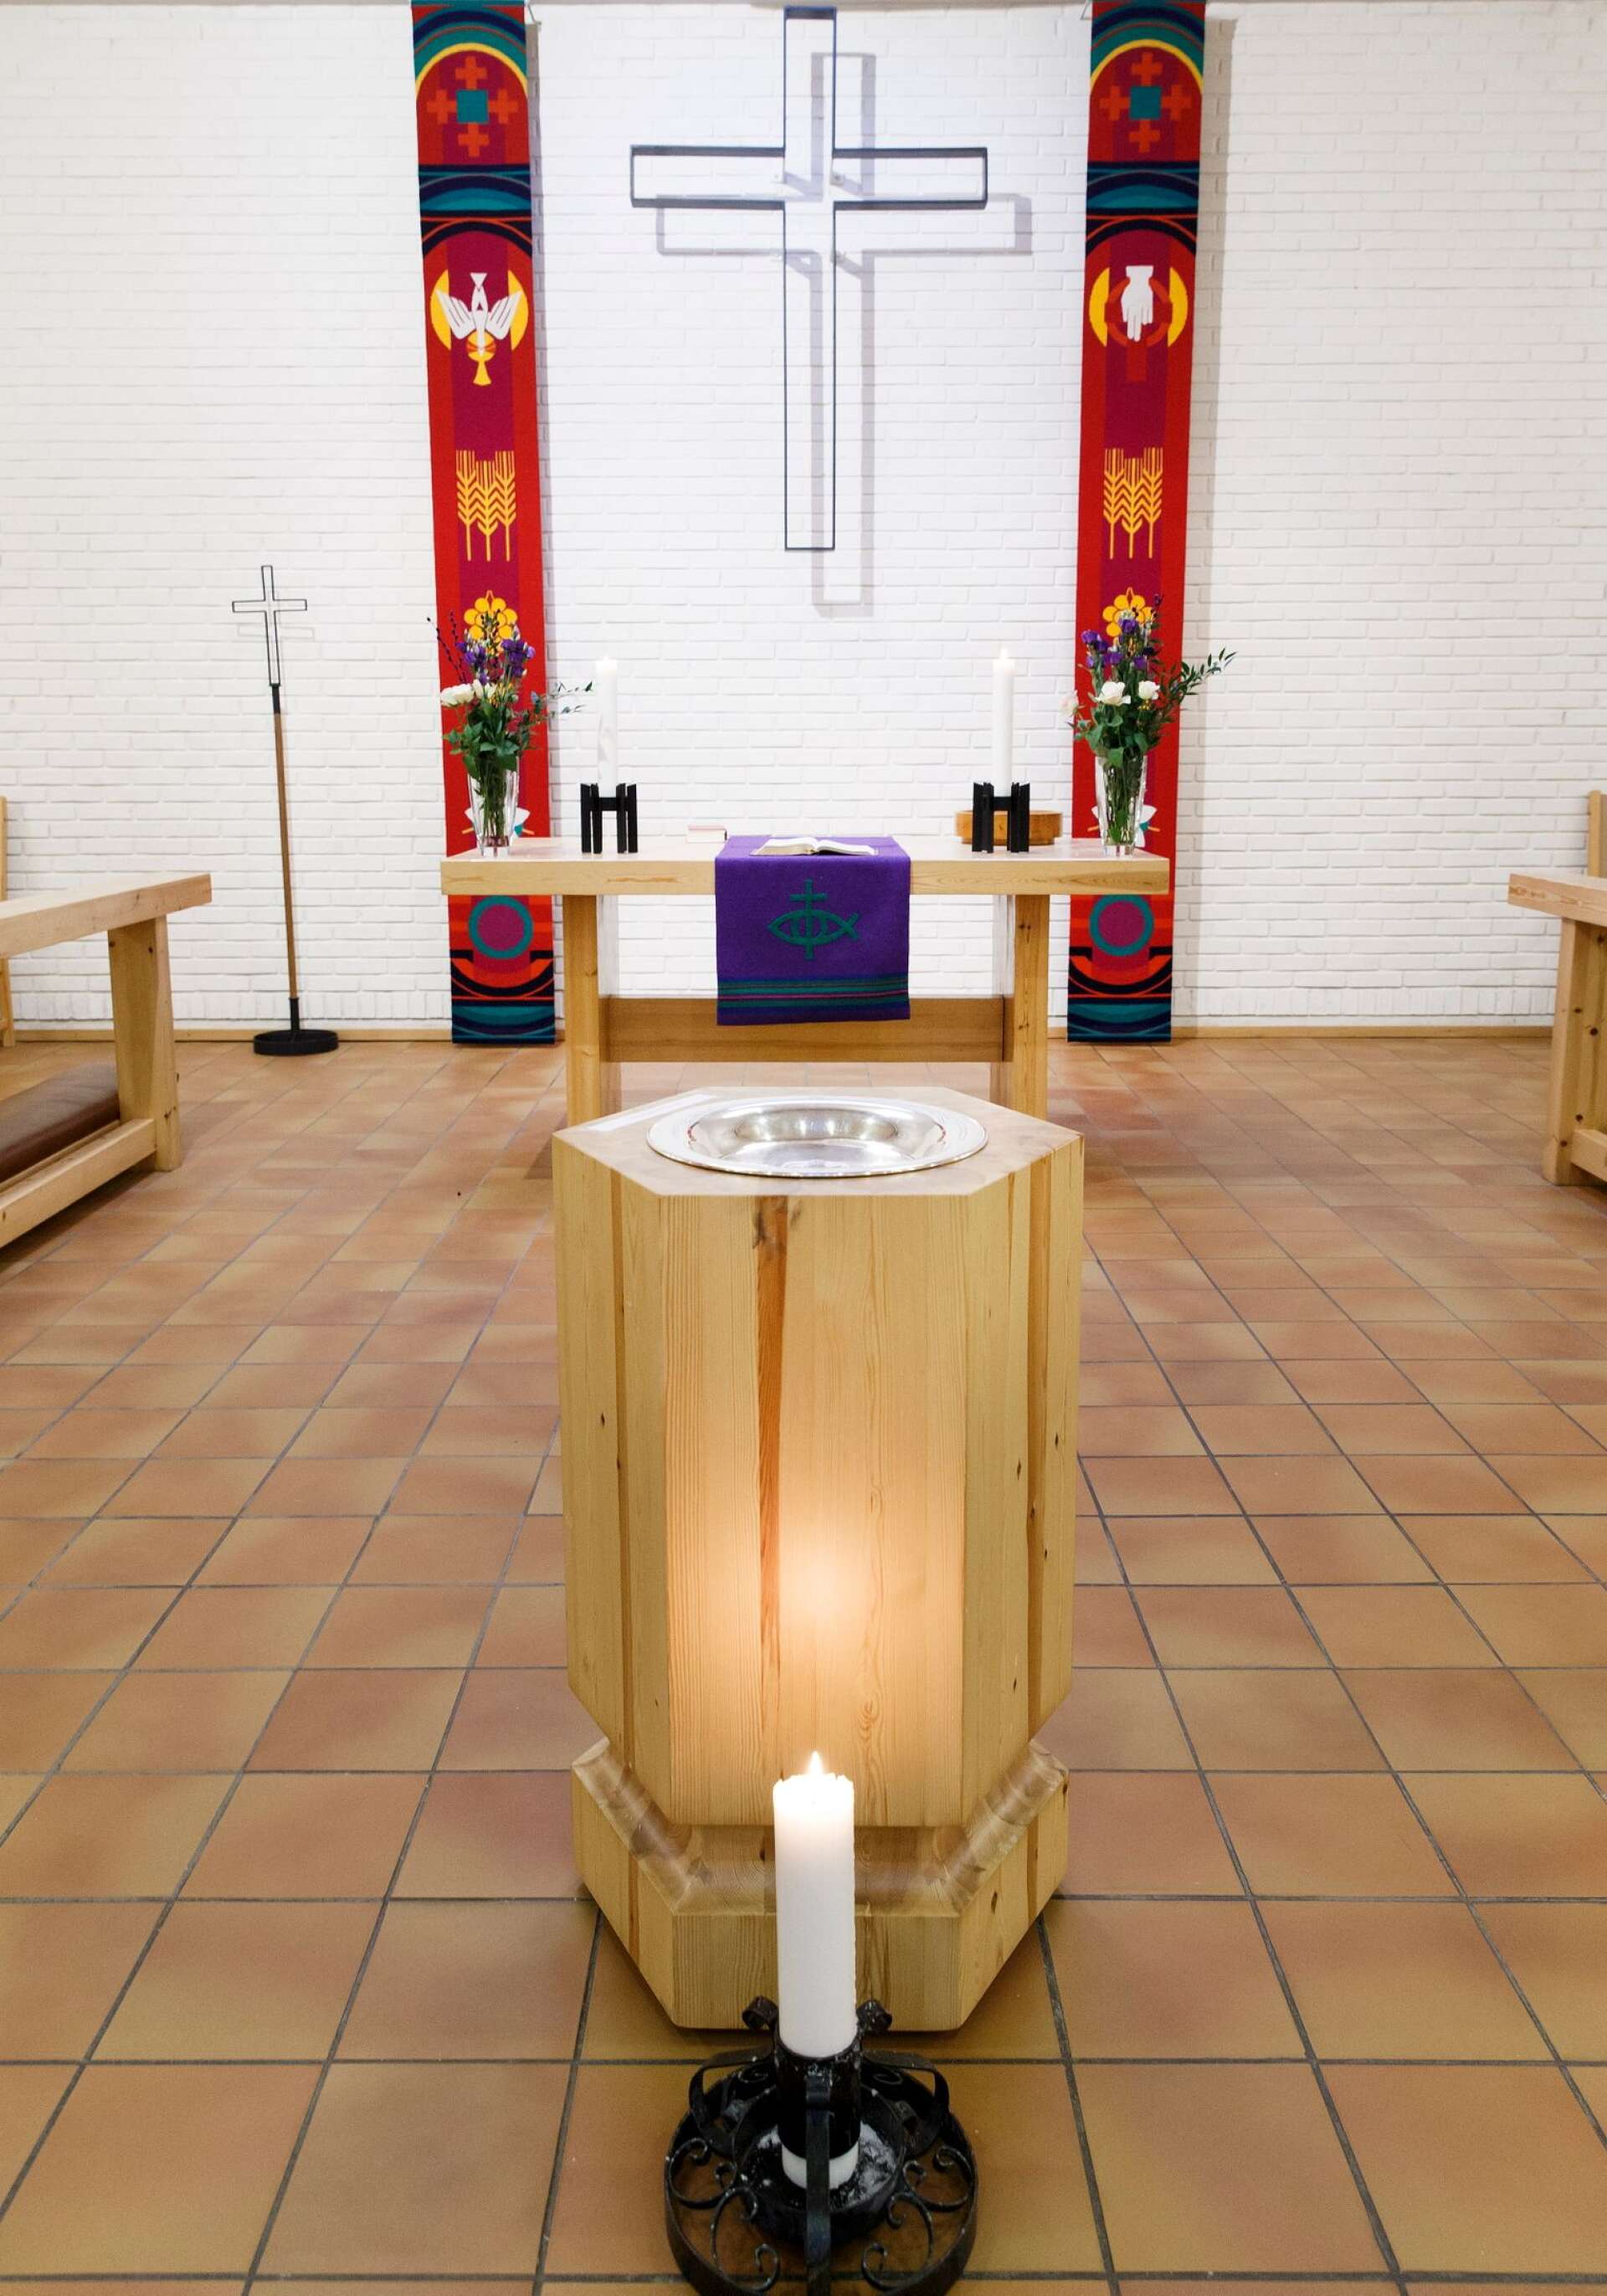 Att utveckla arbetet med dop kan vara ett sätt att stärka kyrkans roll i samhället, anser Kristdemokrater i Svenska kyrkan.